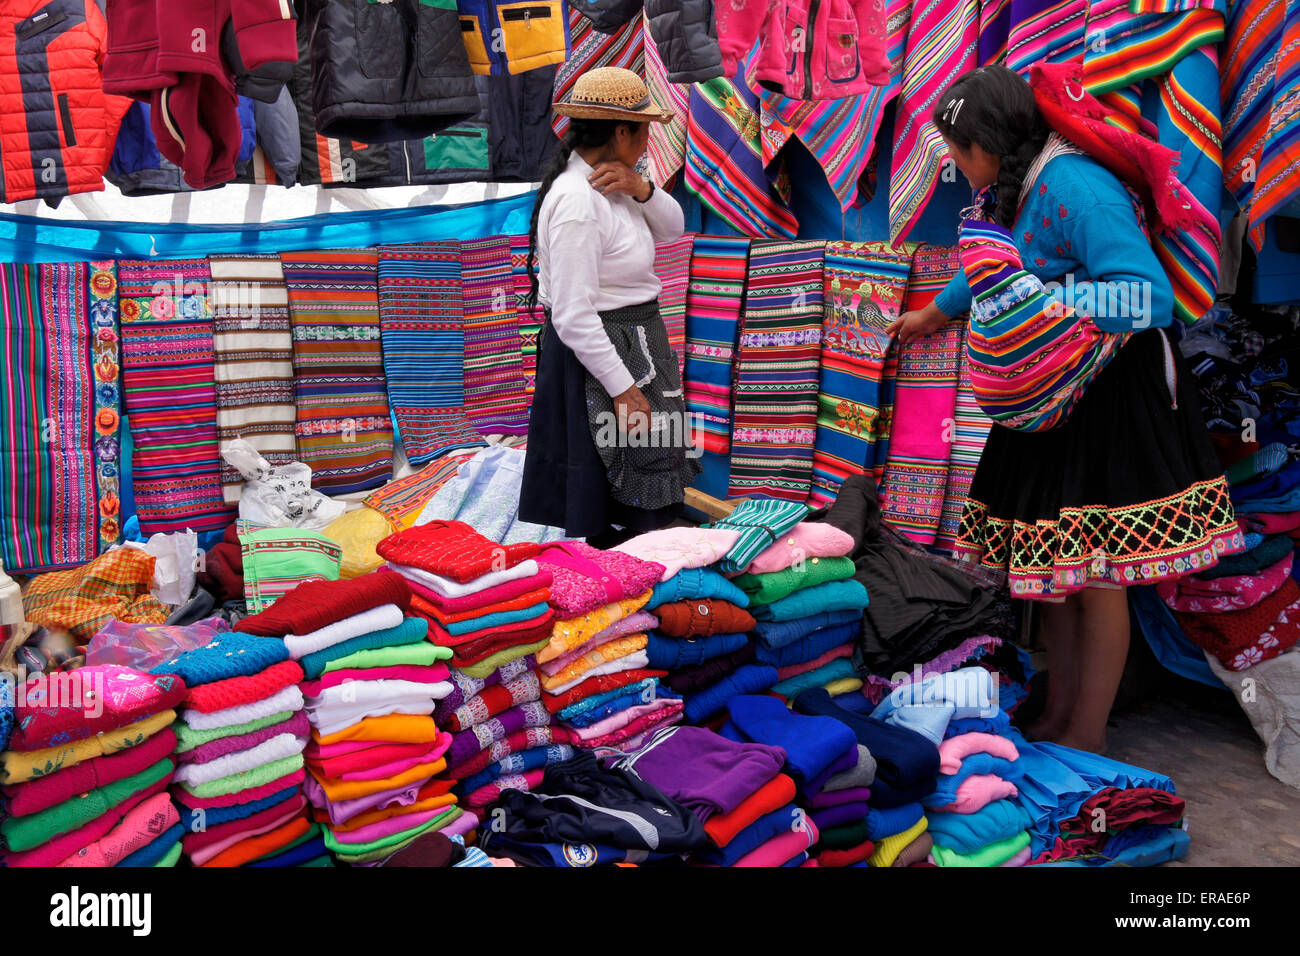 Kaufen Sie verkaufen Kleidung und Textilien bei Sonntagsmarkt, Quiquijana  (in der Nähe von Cuzco), Peru Stockfotografie - Alamy